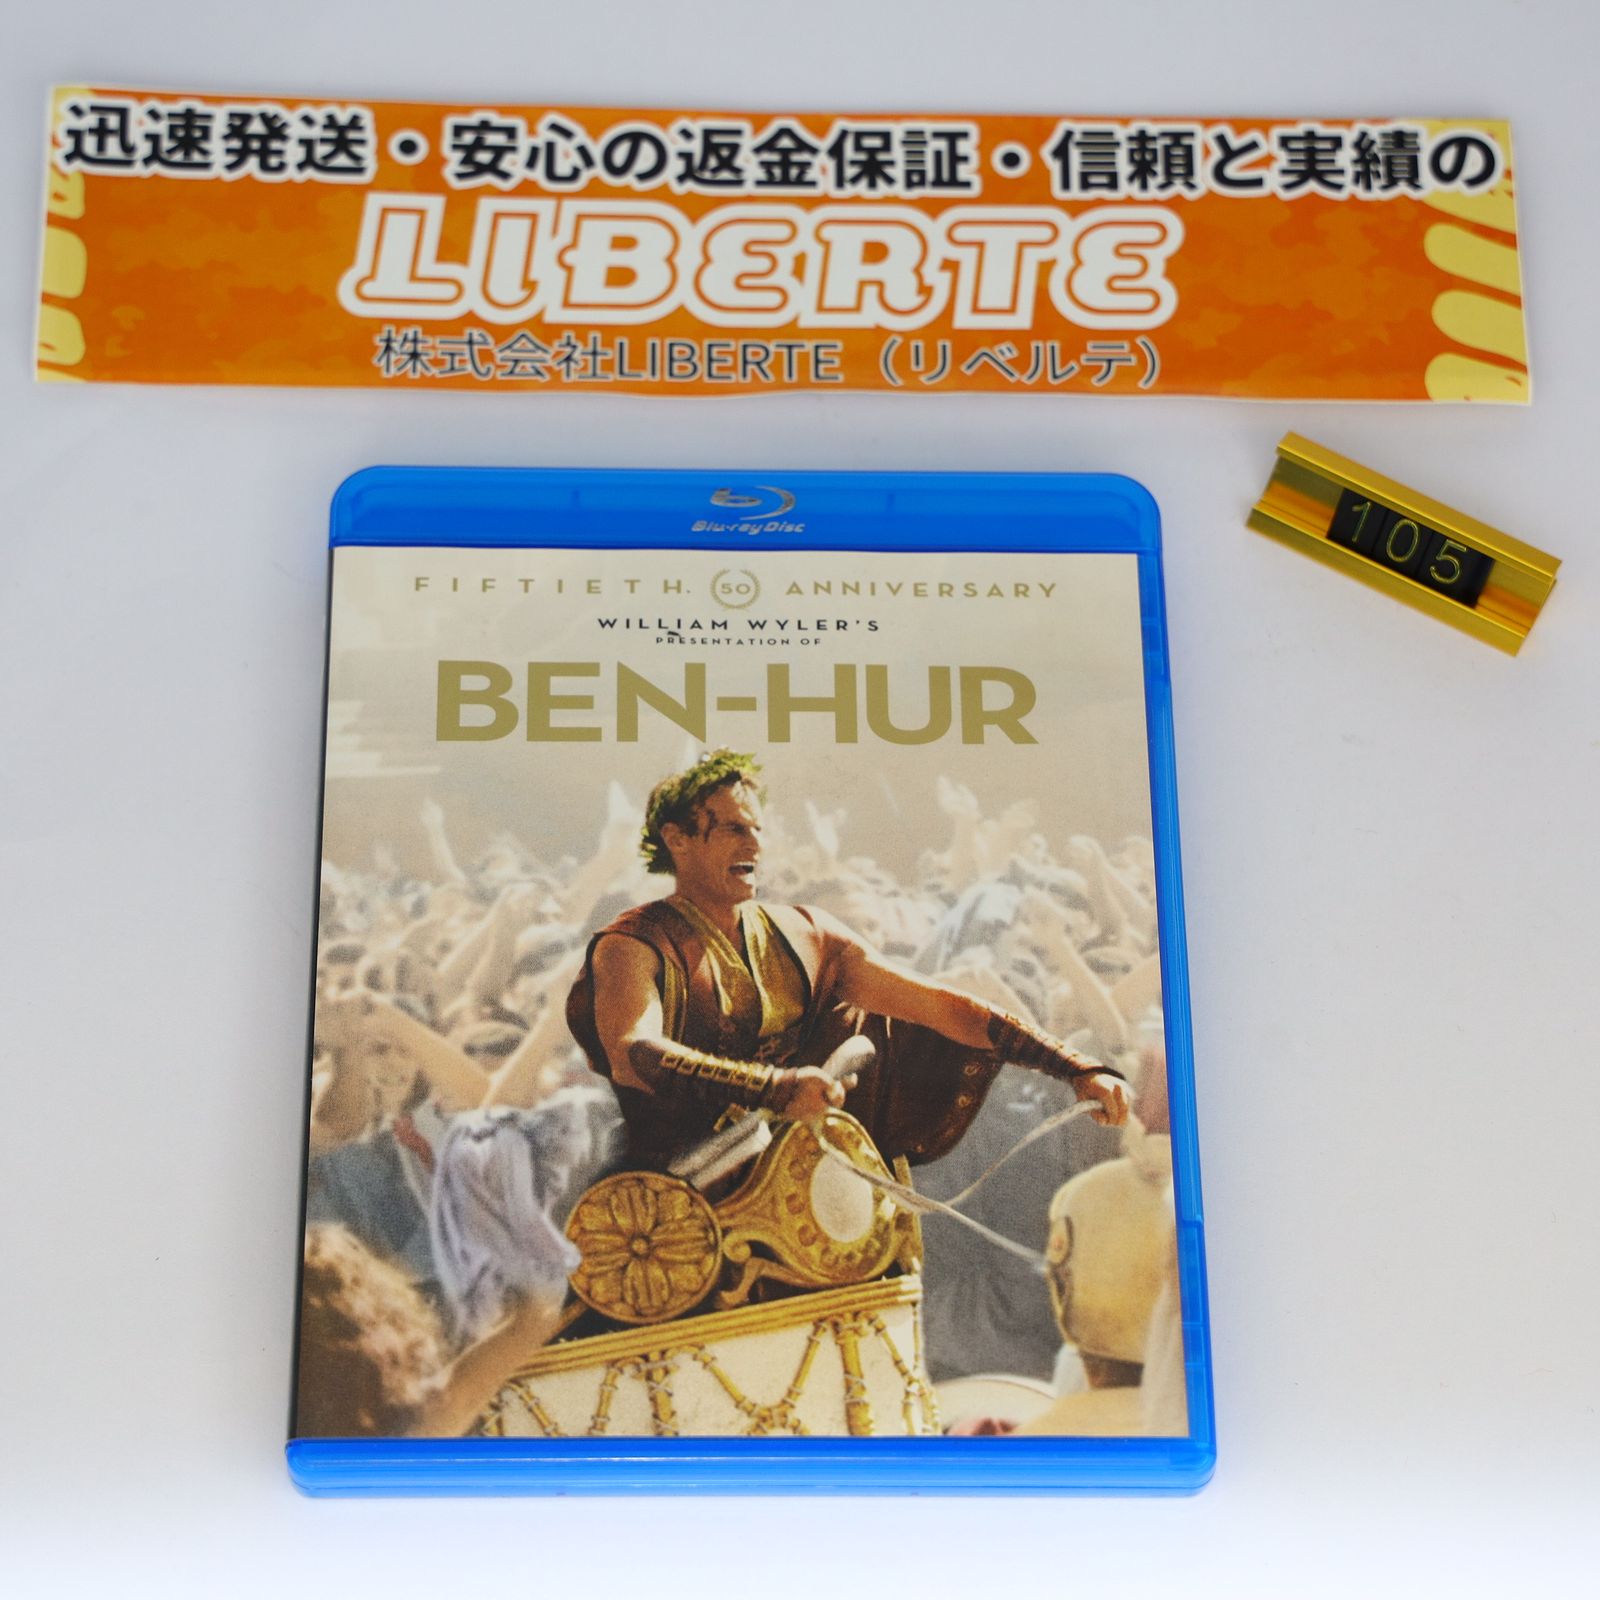 ベン・ハー 製作50周年記念リマスター版(2枚組) [Blu-ray]105